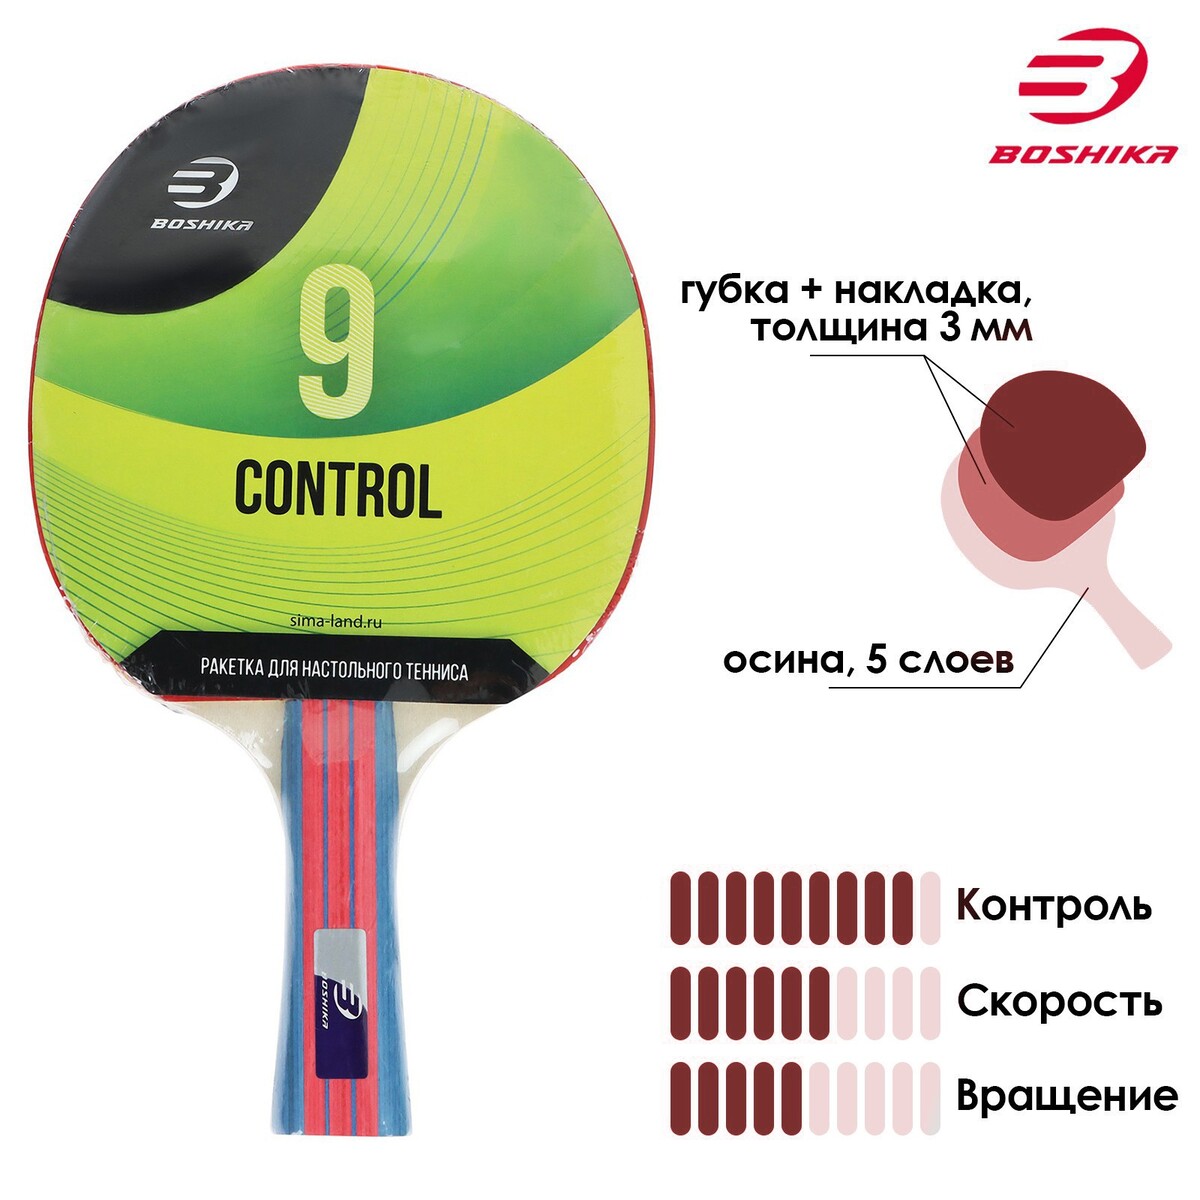 Ракетка для настольного тенниса boshika control 9, для начинающих, губка 1,8 мм, коническая ручка ракетка для настольного тенниса boshika training 1 звезда